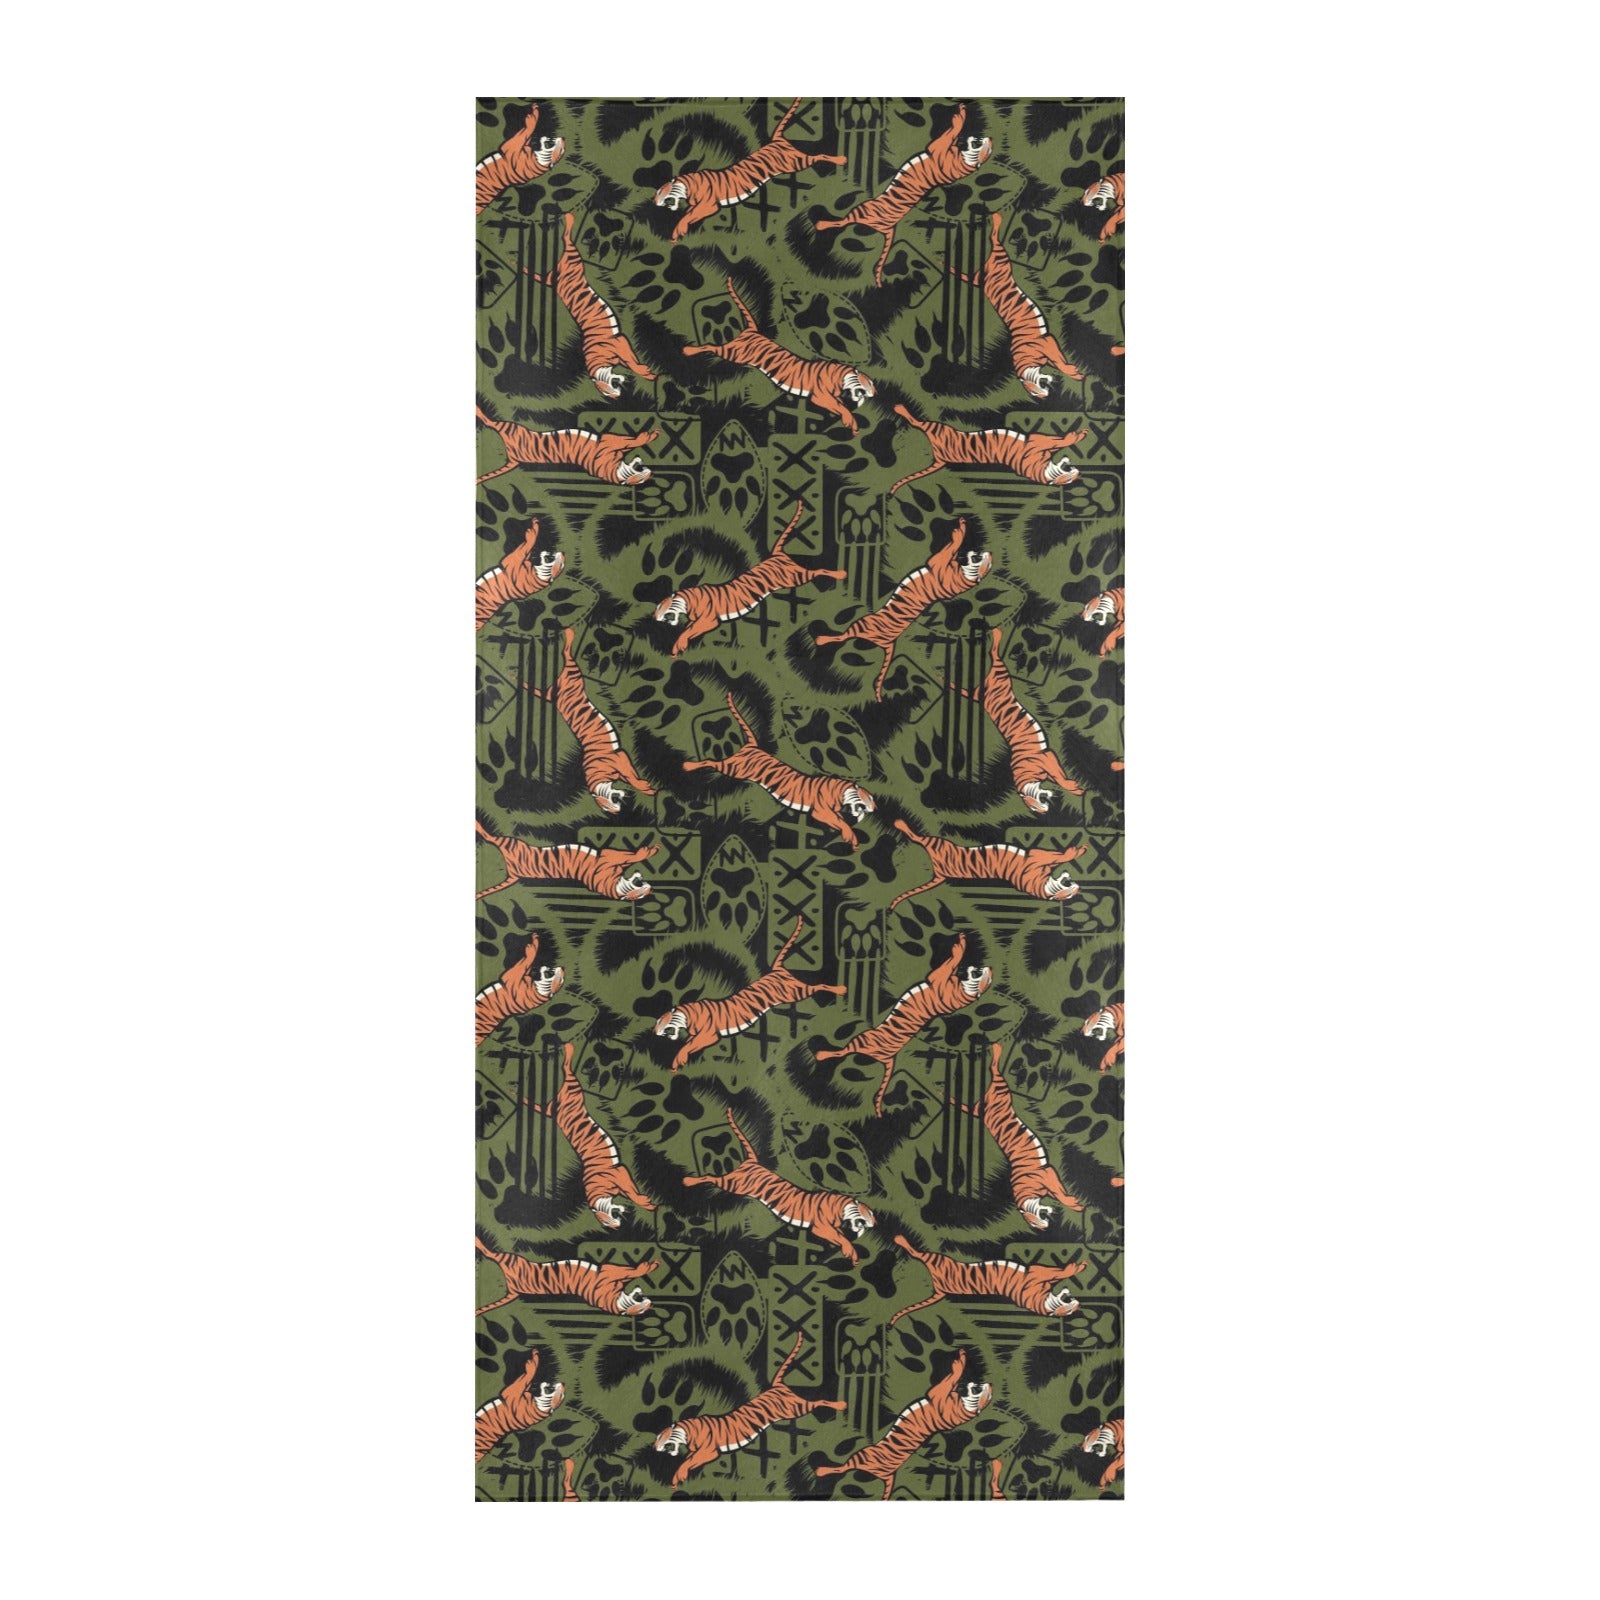 Tiger Pattern Print Design LKS303 Beach Towel 32" x 71"